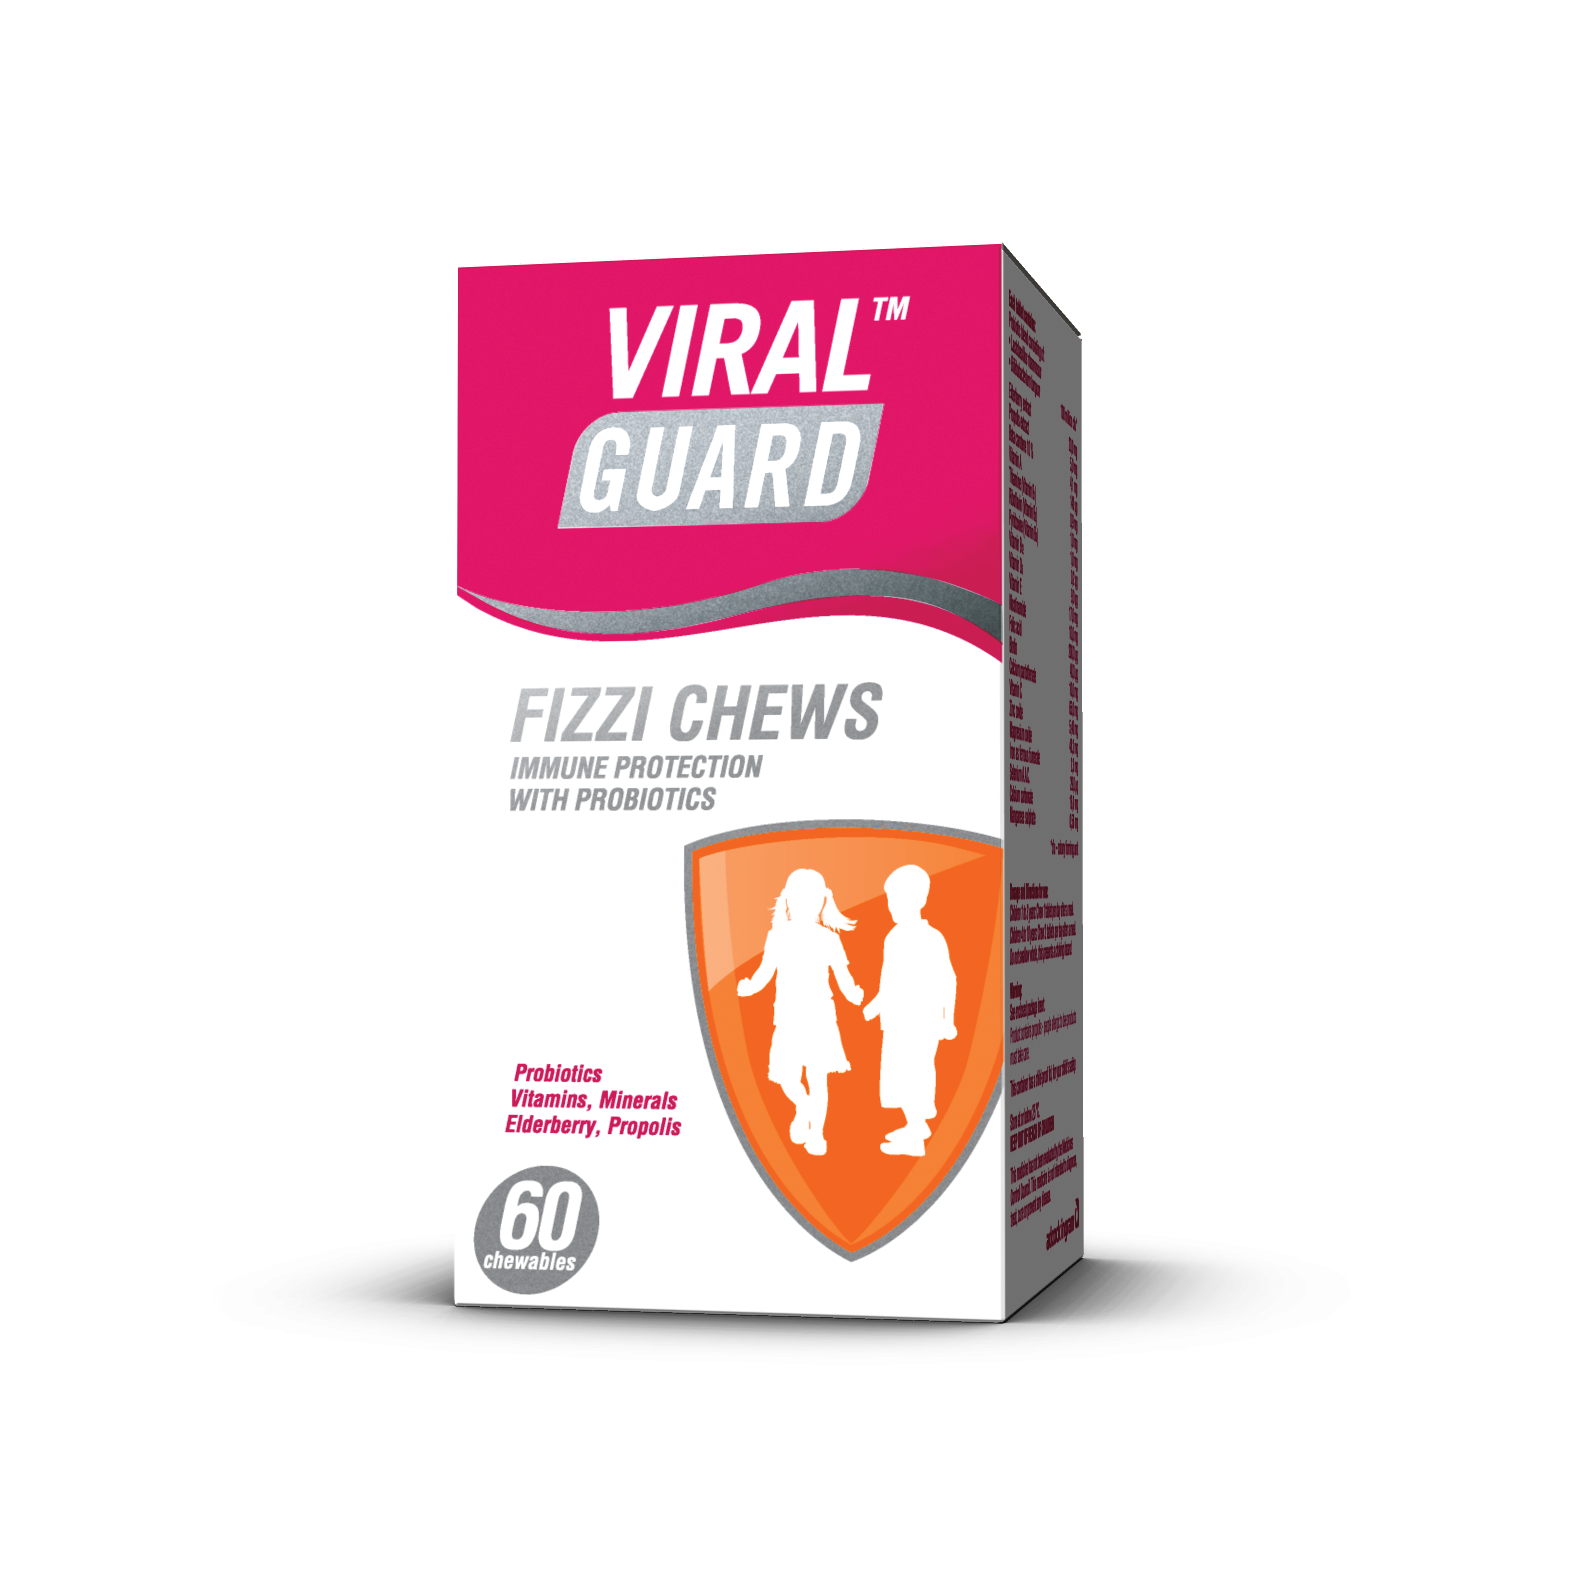 Viral Guard Fizzi Chews, 60 Tablets